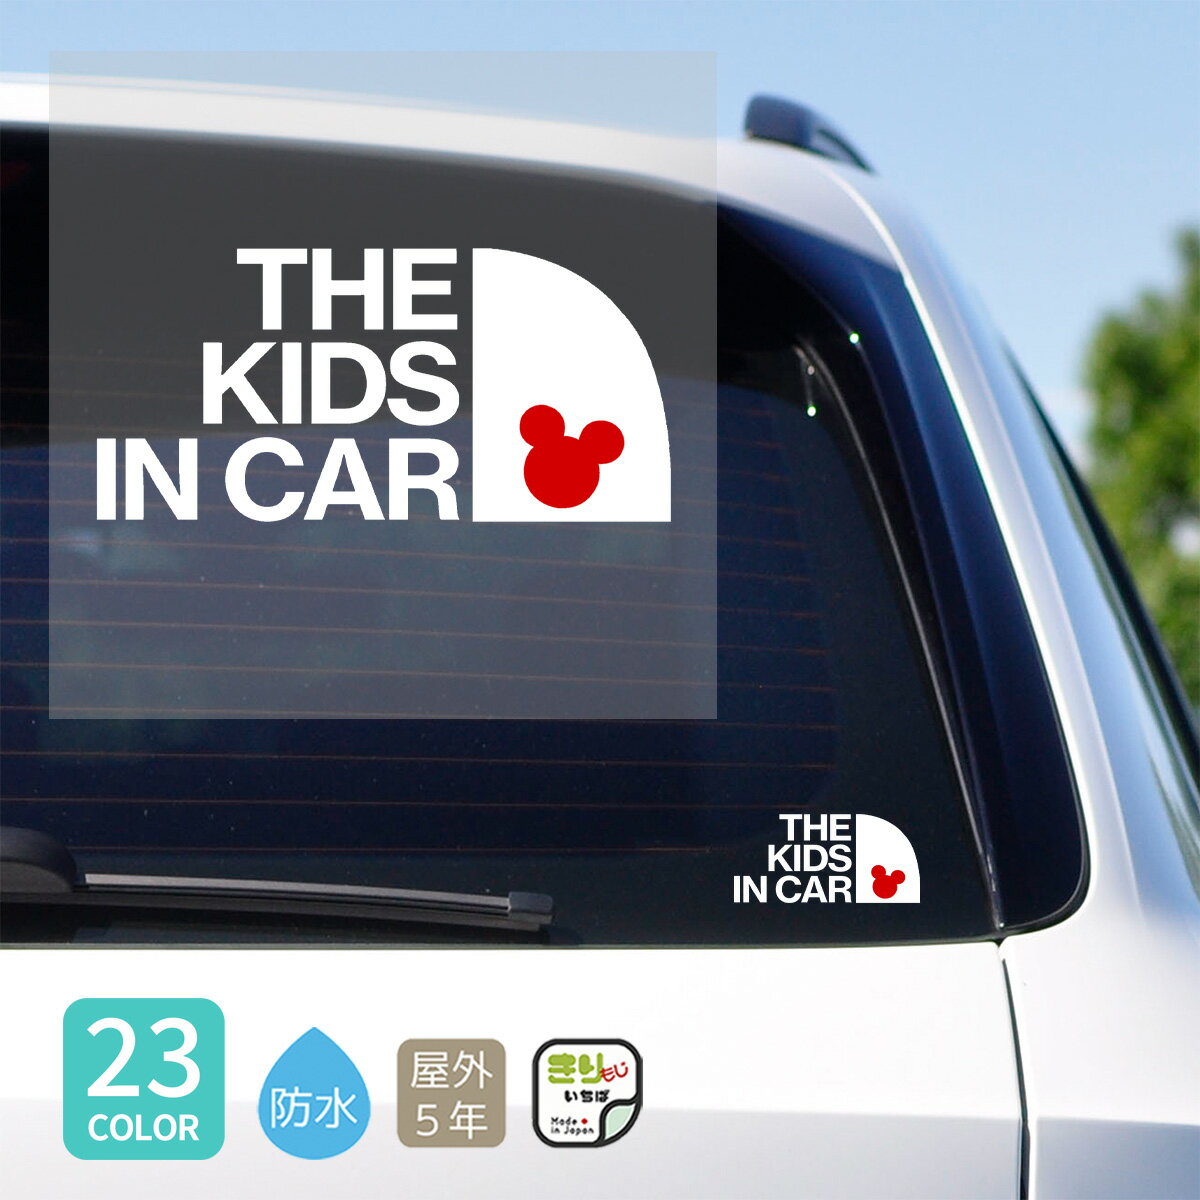  キッズインカー ステッカー 車 おしゃれ かわいい THE KIDS IN CAR こども 乗ってます カッティングステッカー シール 防水 カーステッカー キッズ シンプル 子ども 子供 カー用品 キッズ用品 車用 車に貼る きりもじいちば